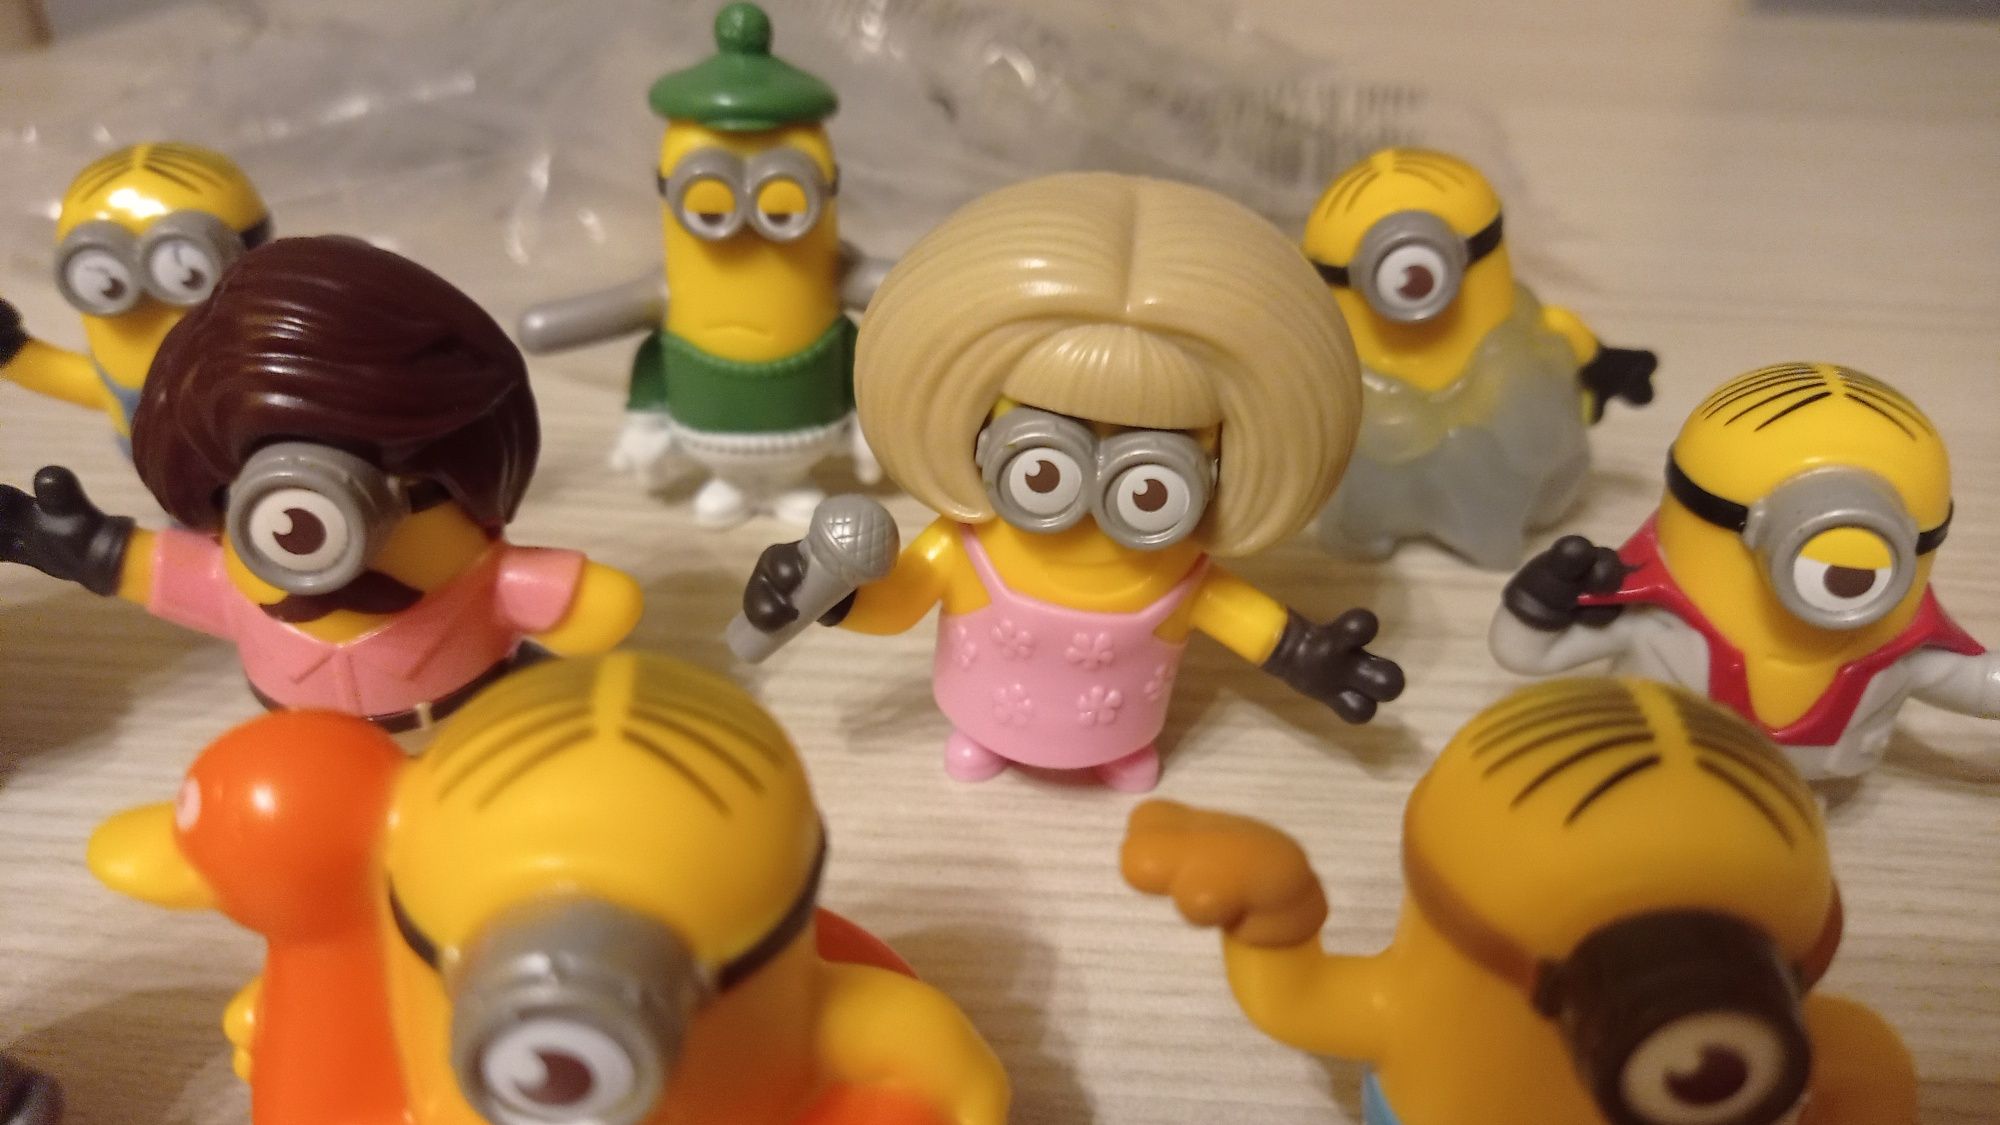 Minionek Minionki NOWE figurki 10 różnych - Mc Donald's 2019 zestaw z